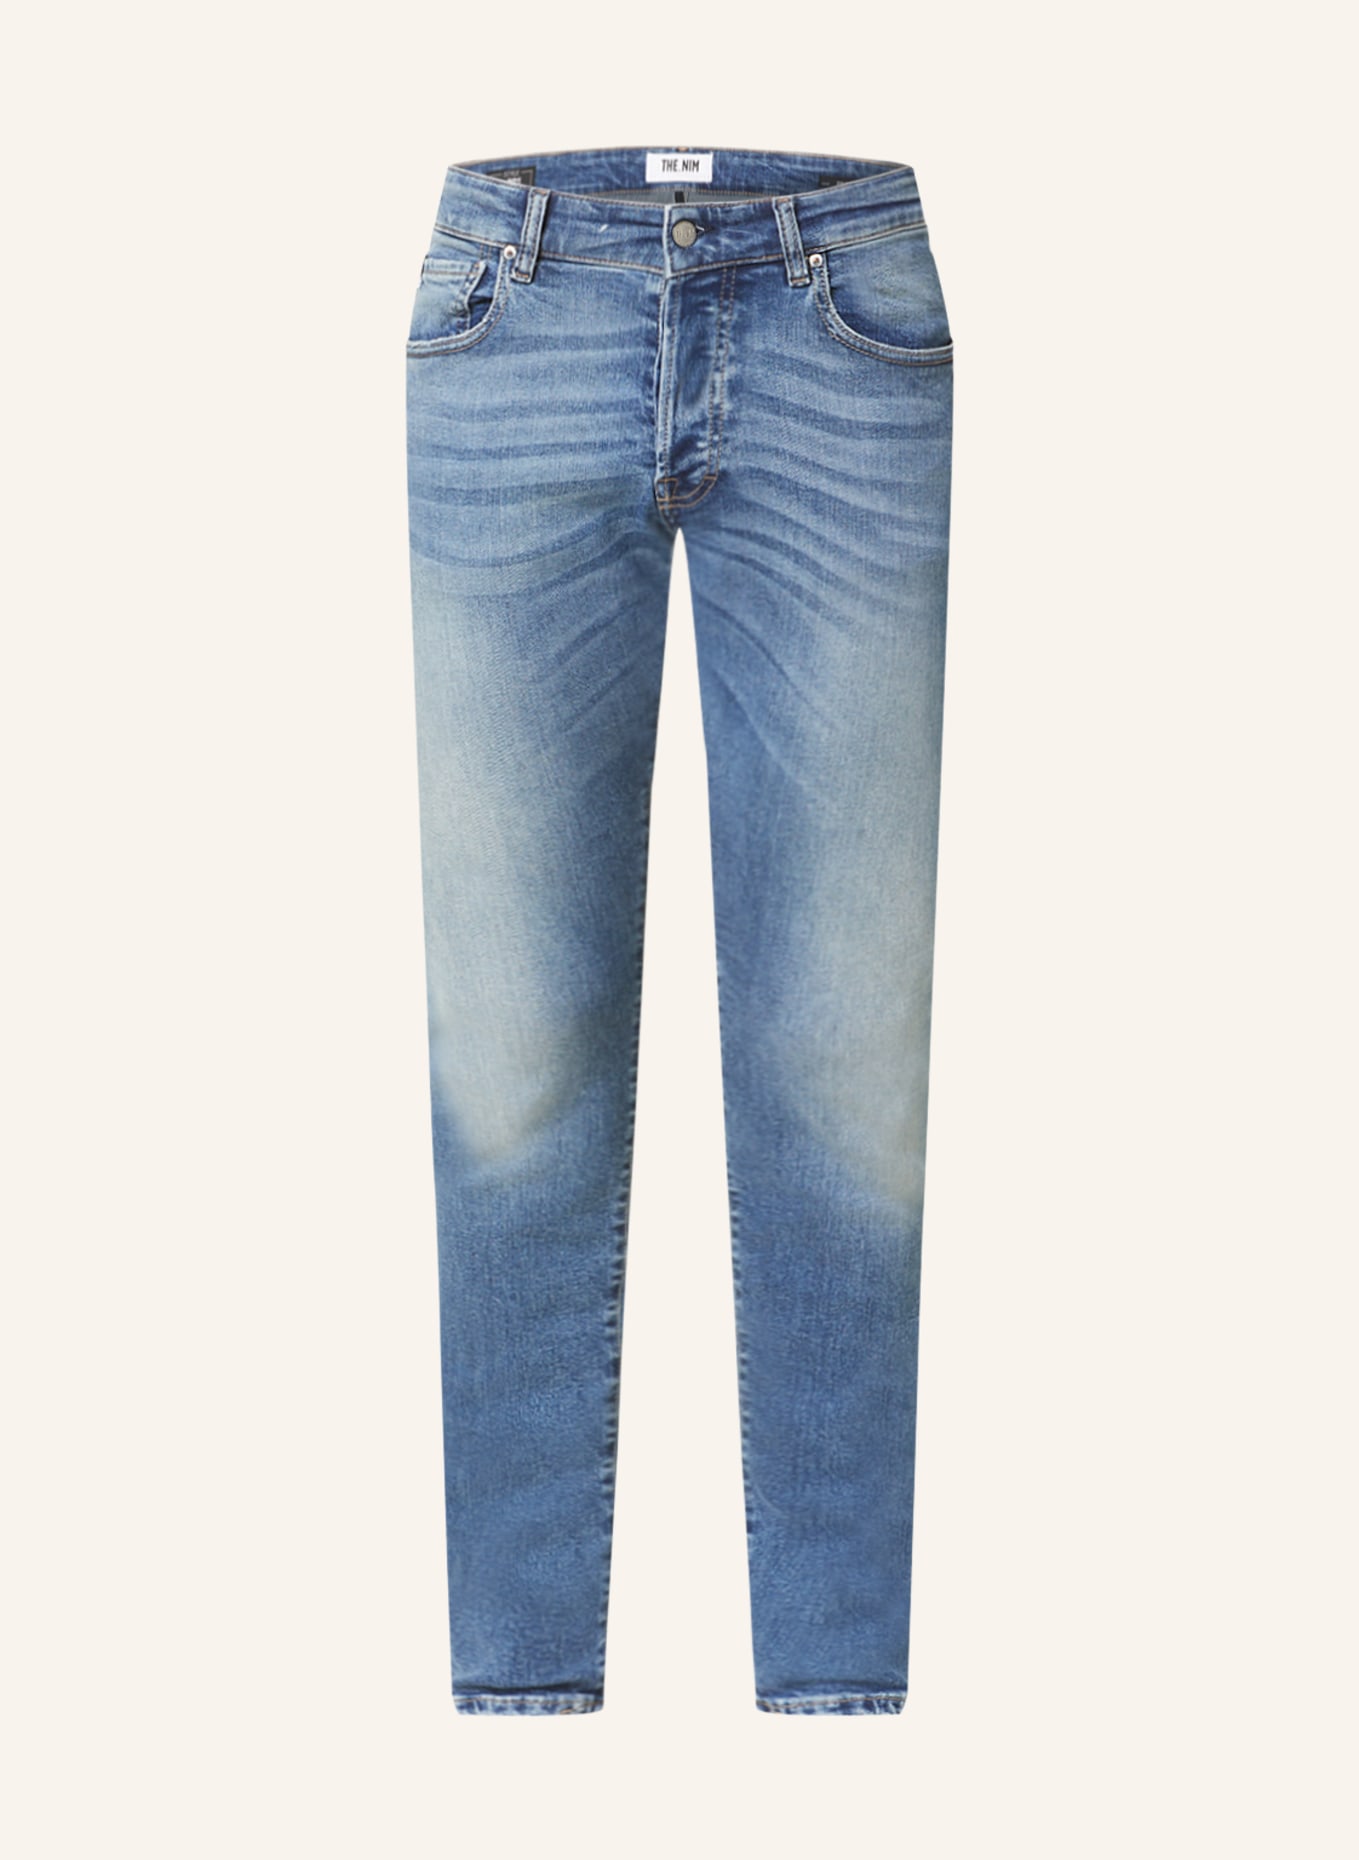 THE.NIM STANDARD Jeans DYLAN slim fit, Color: W432-MDM MEDIUM (Image 1)